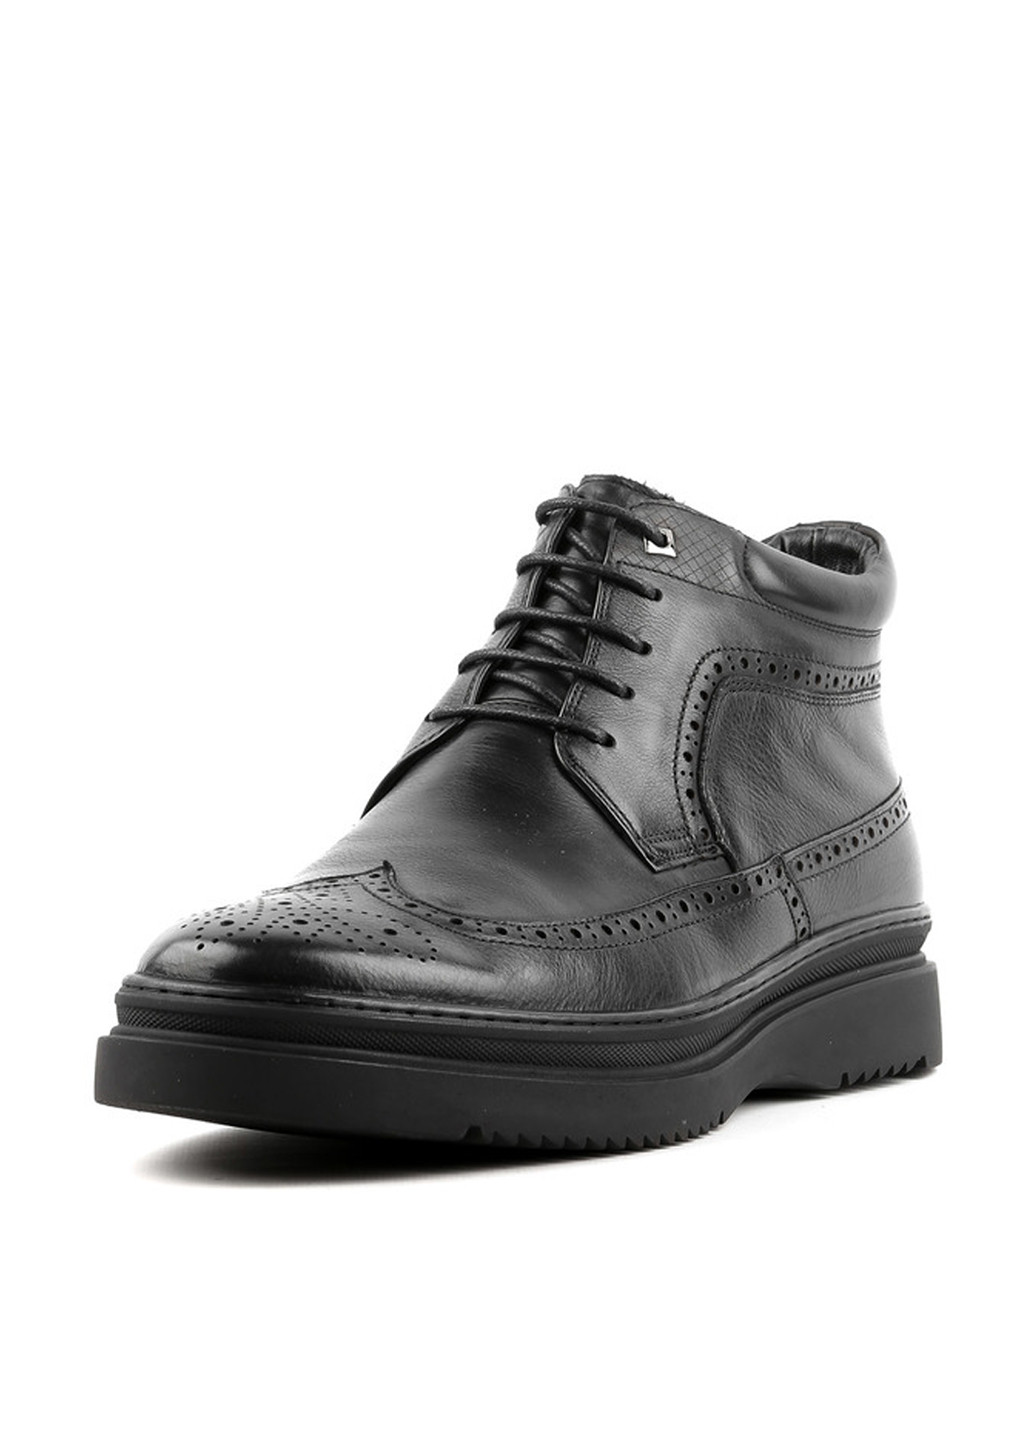 Черные зимние ботинки броги Basconi